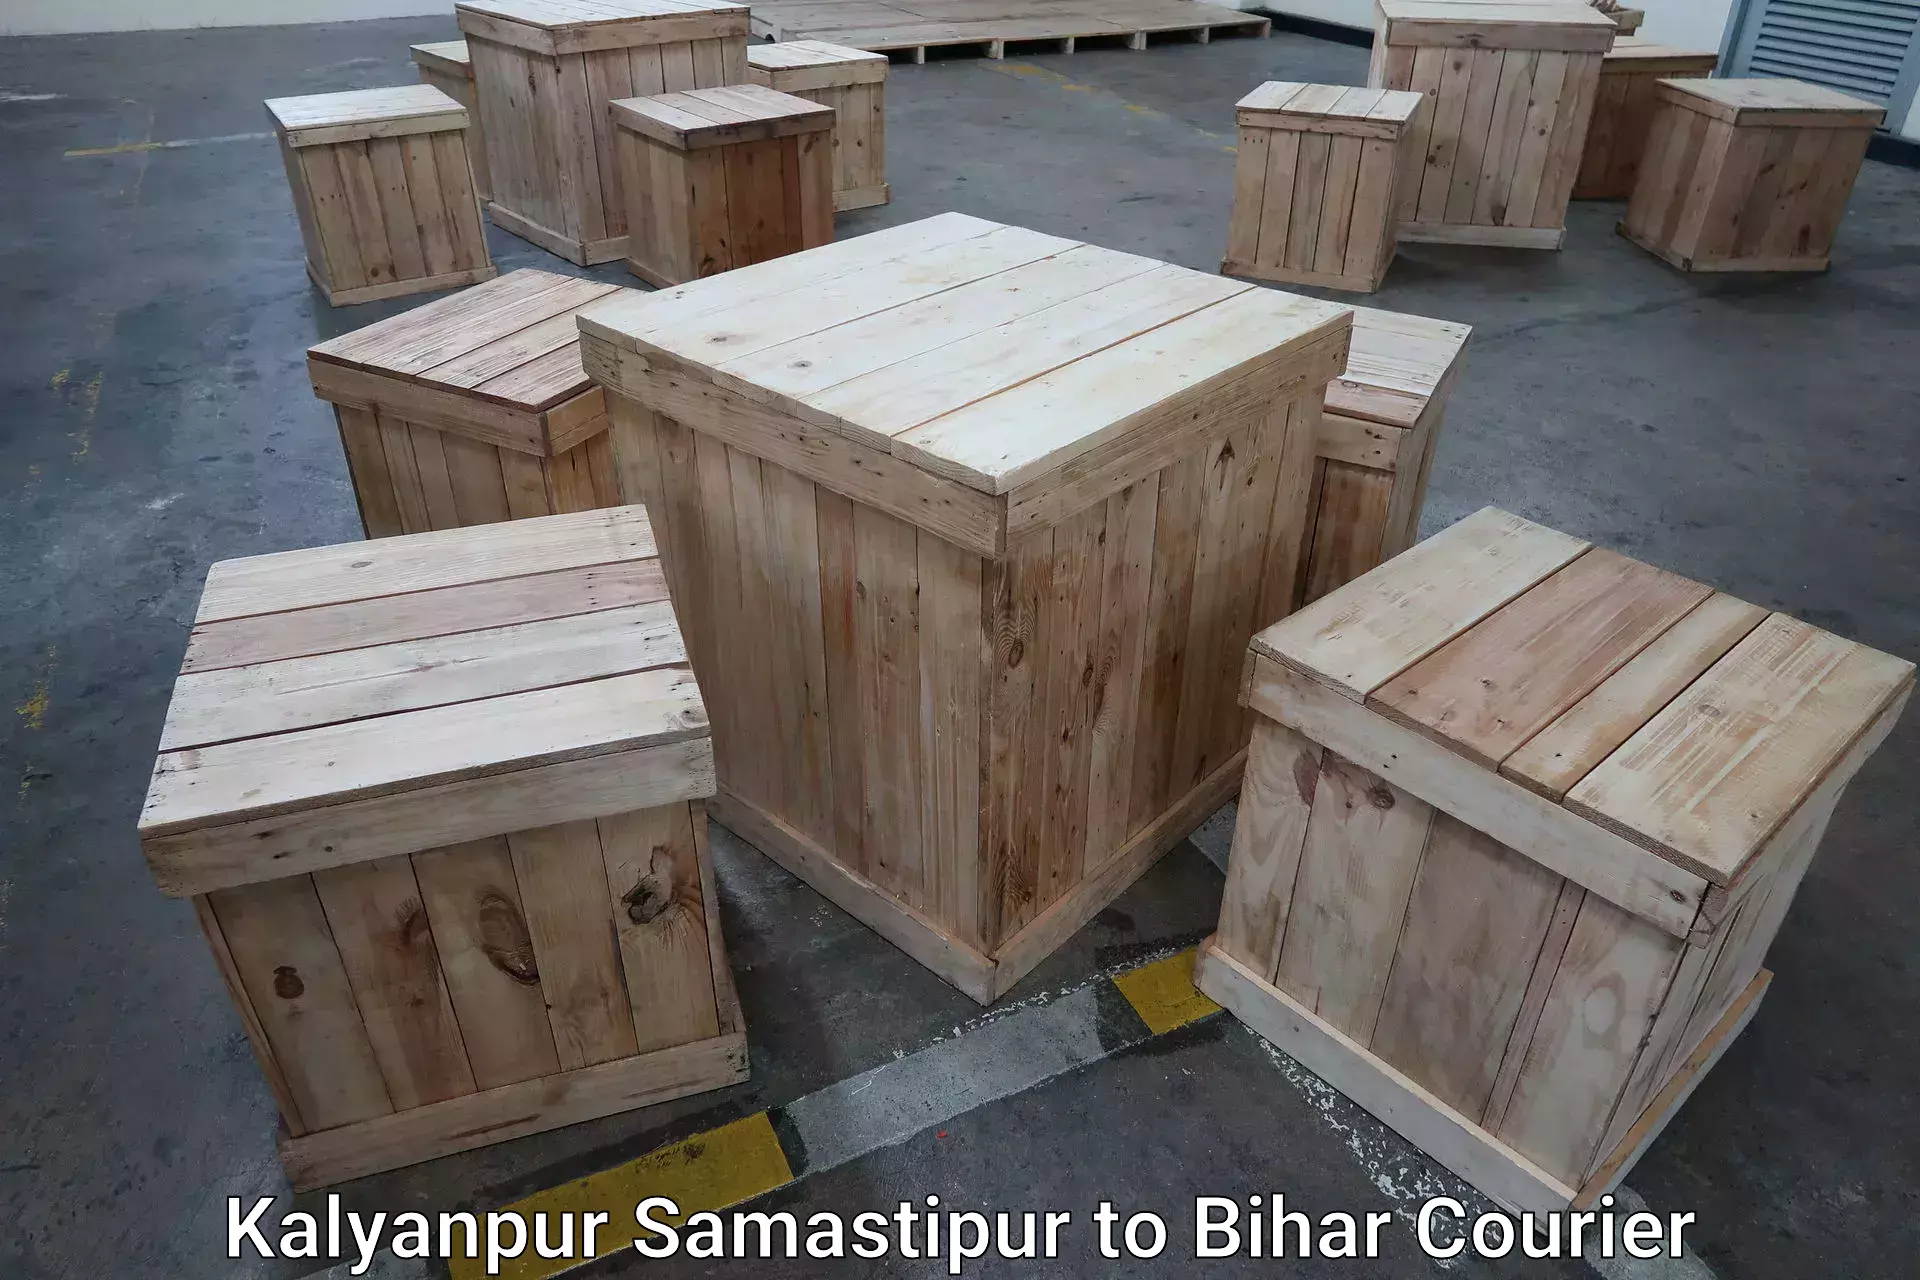 Baggage transport technology Kalyanpur Samastipur to Bihar